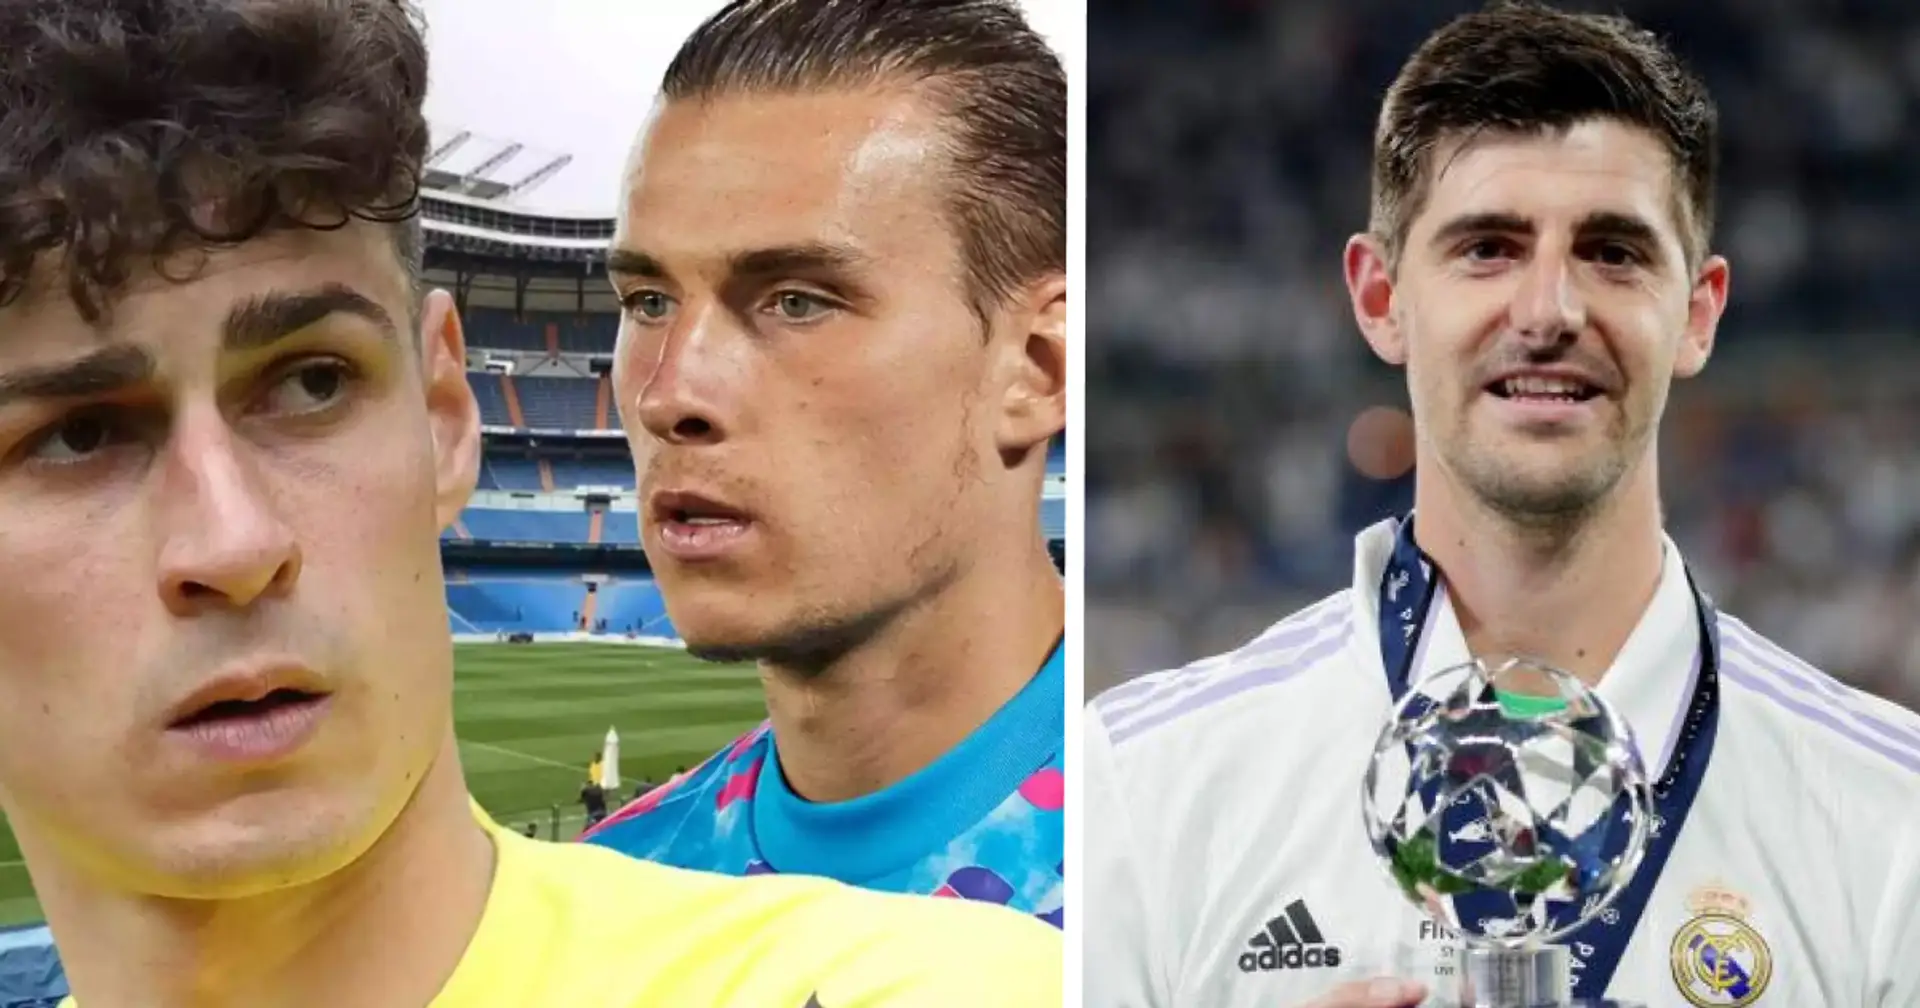 Le Real Madrid identifie un gardien talentueux qui peut remplacer Courtois – ce n'est ni Kepa ni Lunin